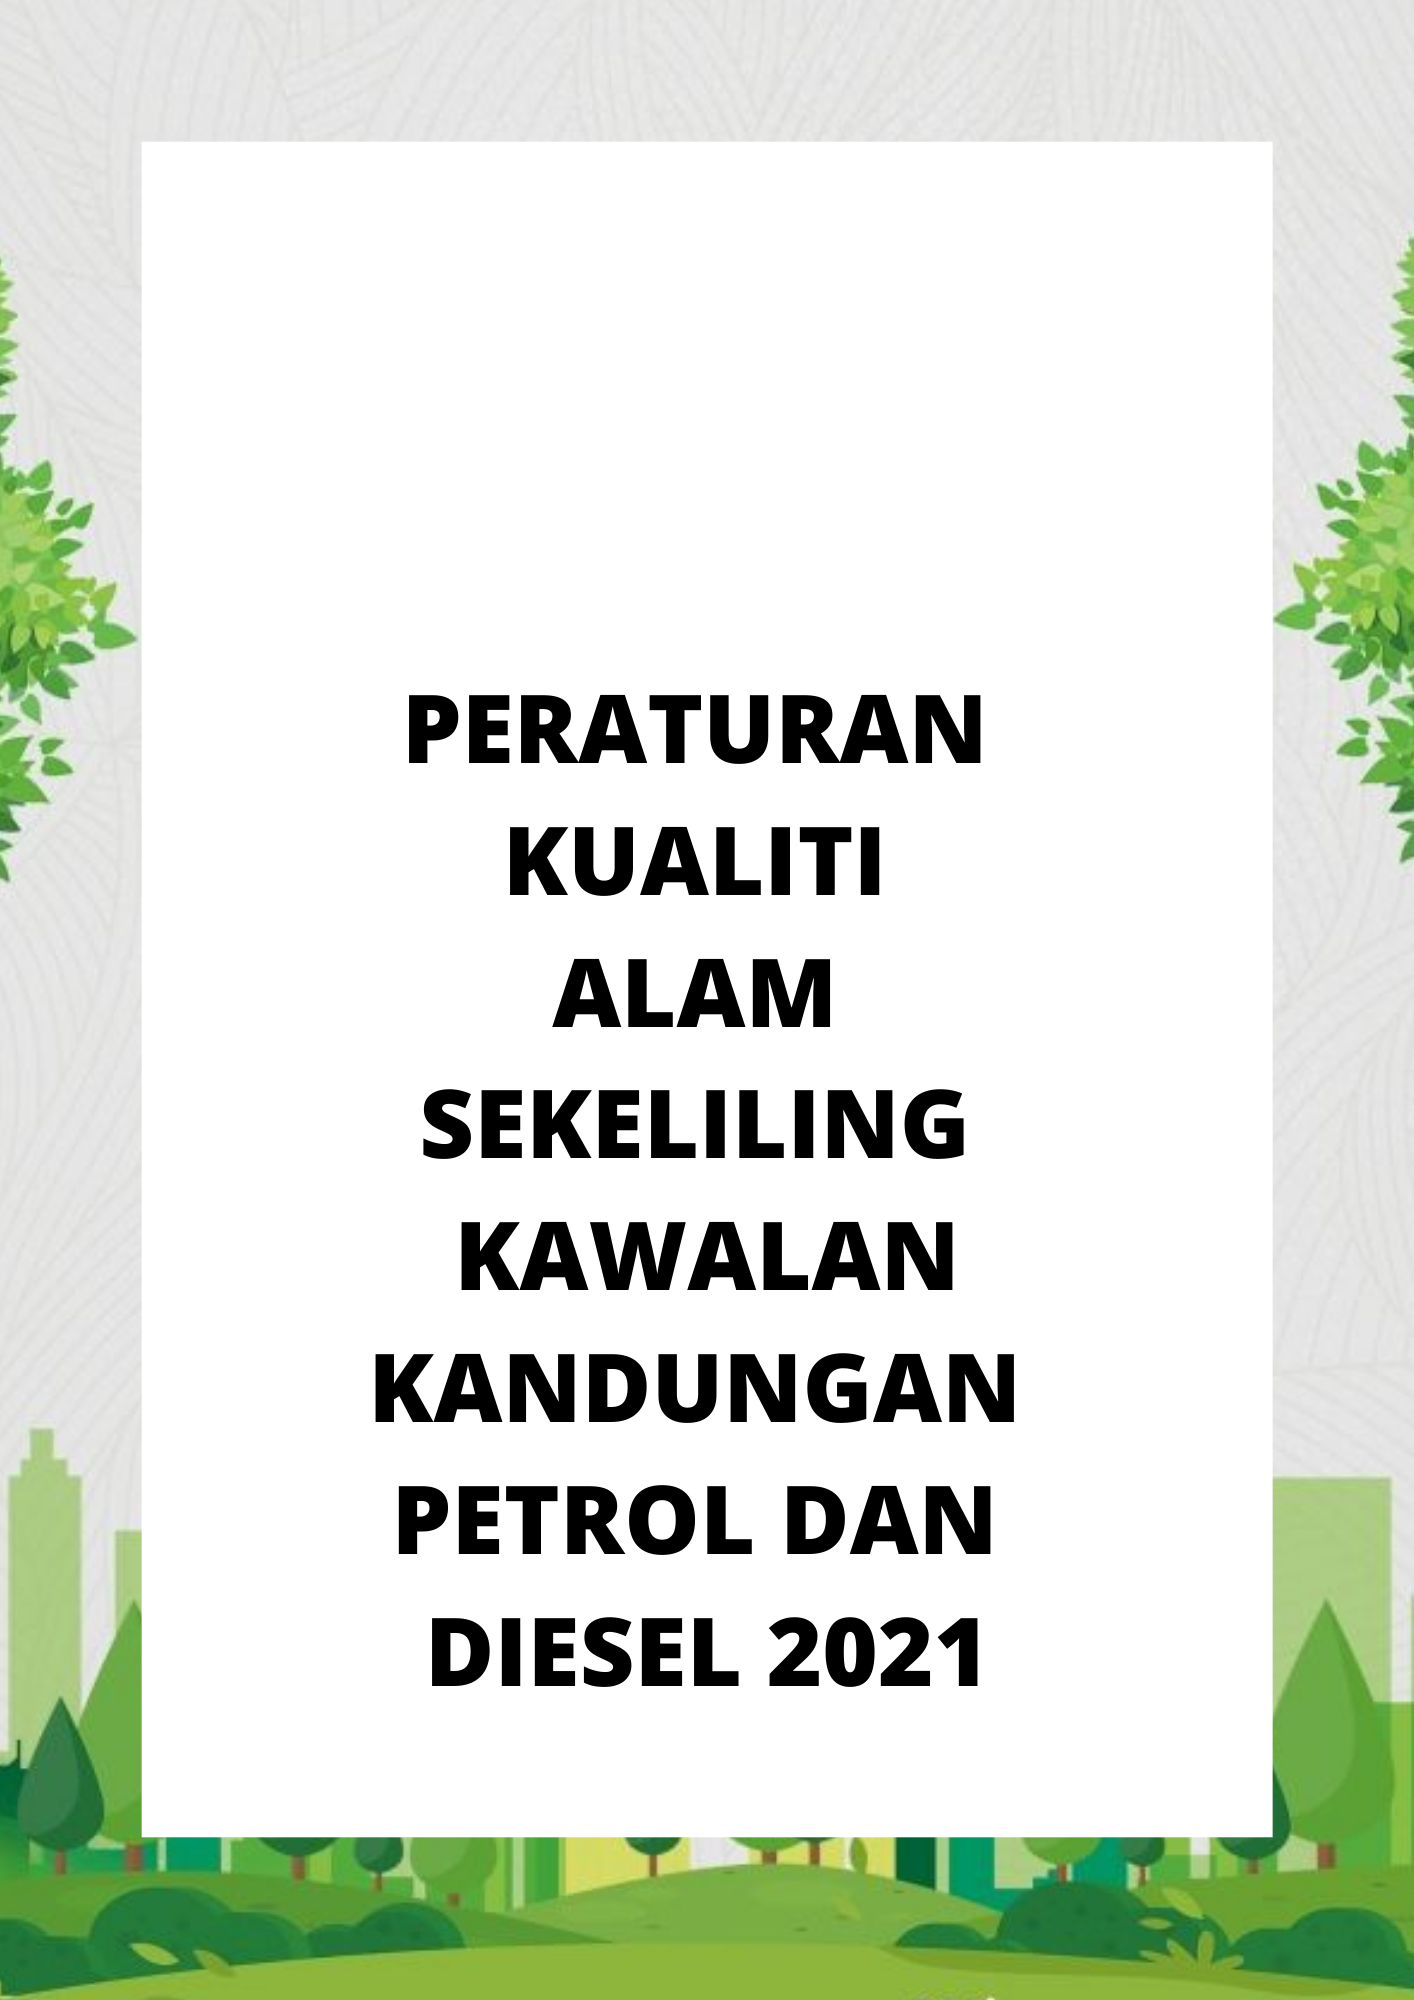 Peraturan Kualiti Alam Sekeliling Kawalan Kandungan Petrol Dan Diesel 2021